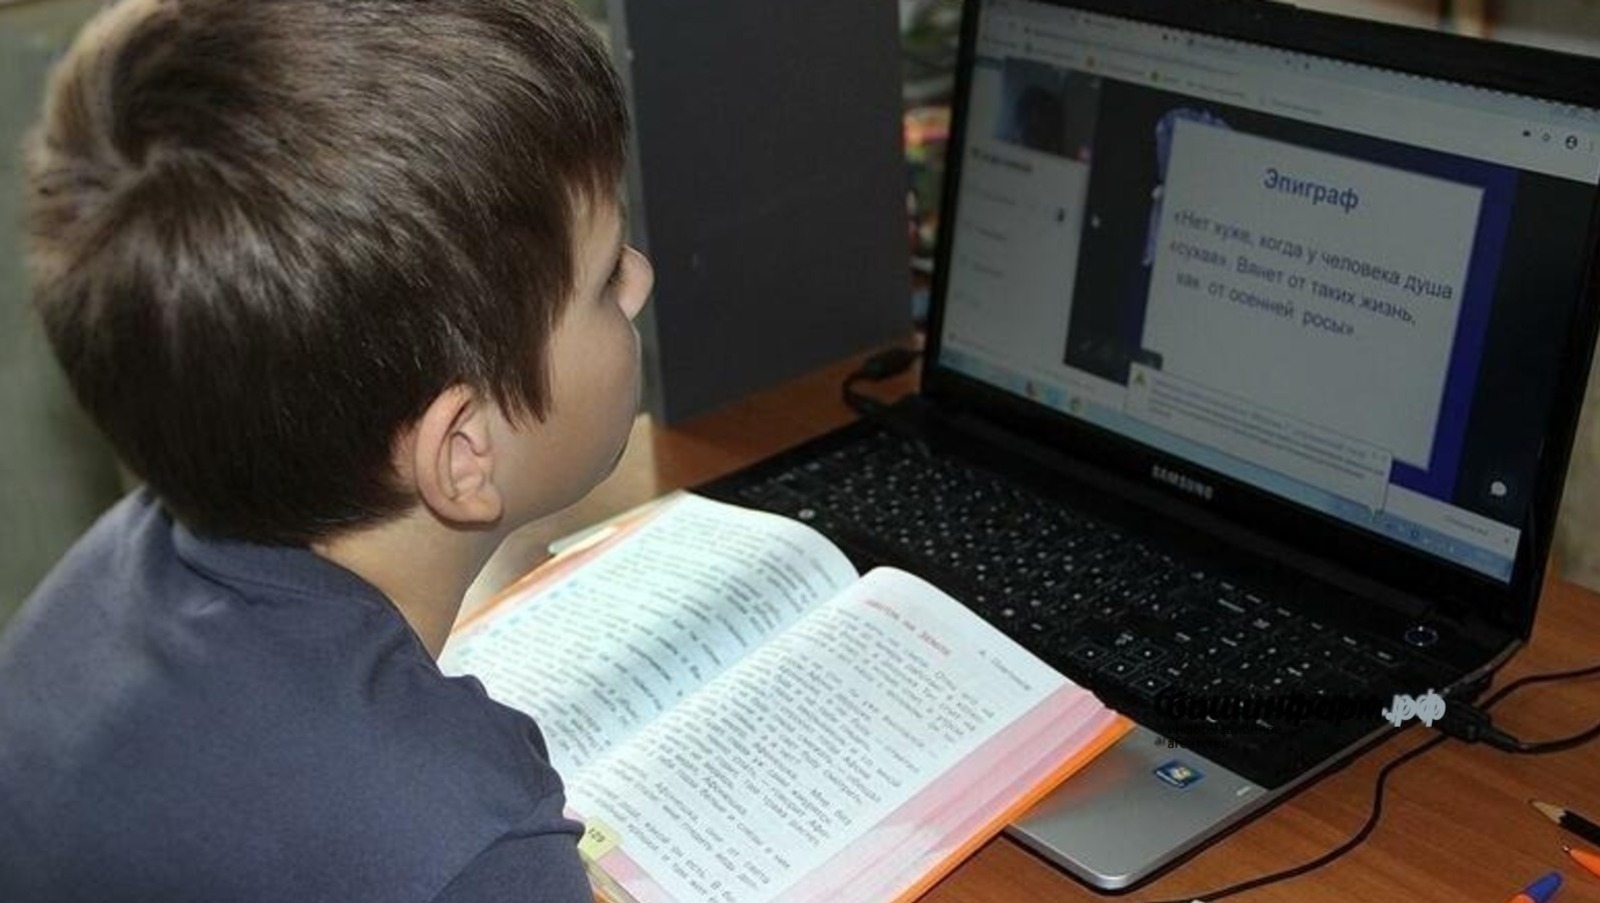 Школьникам Башкирии уменьшат количество контрольных и домашних заданий